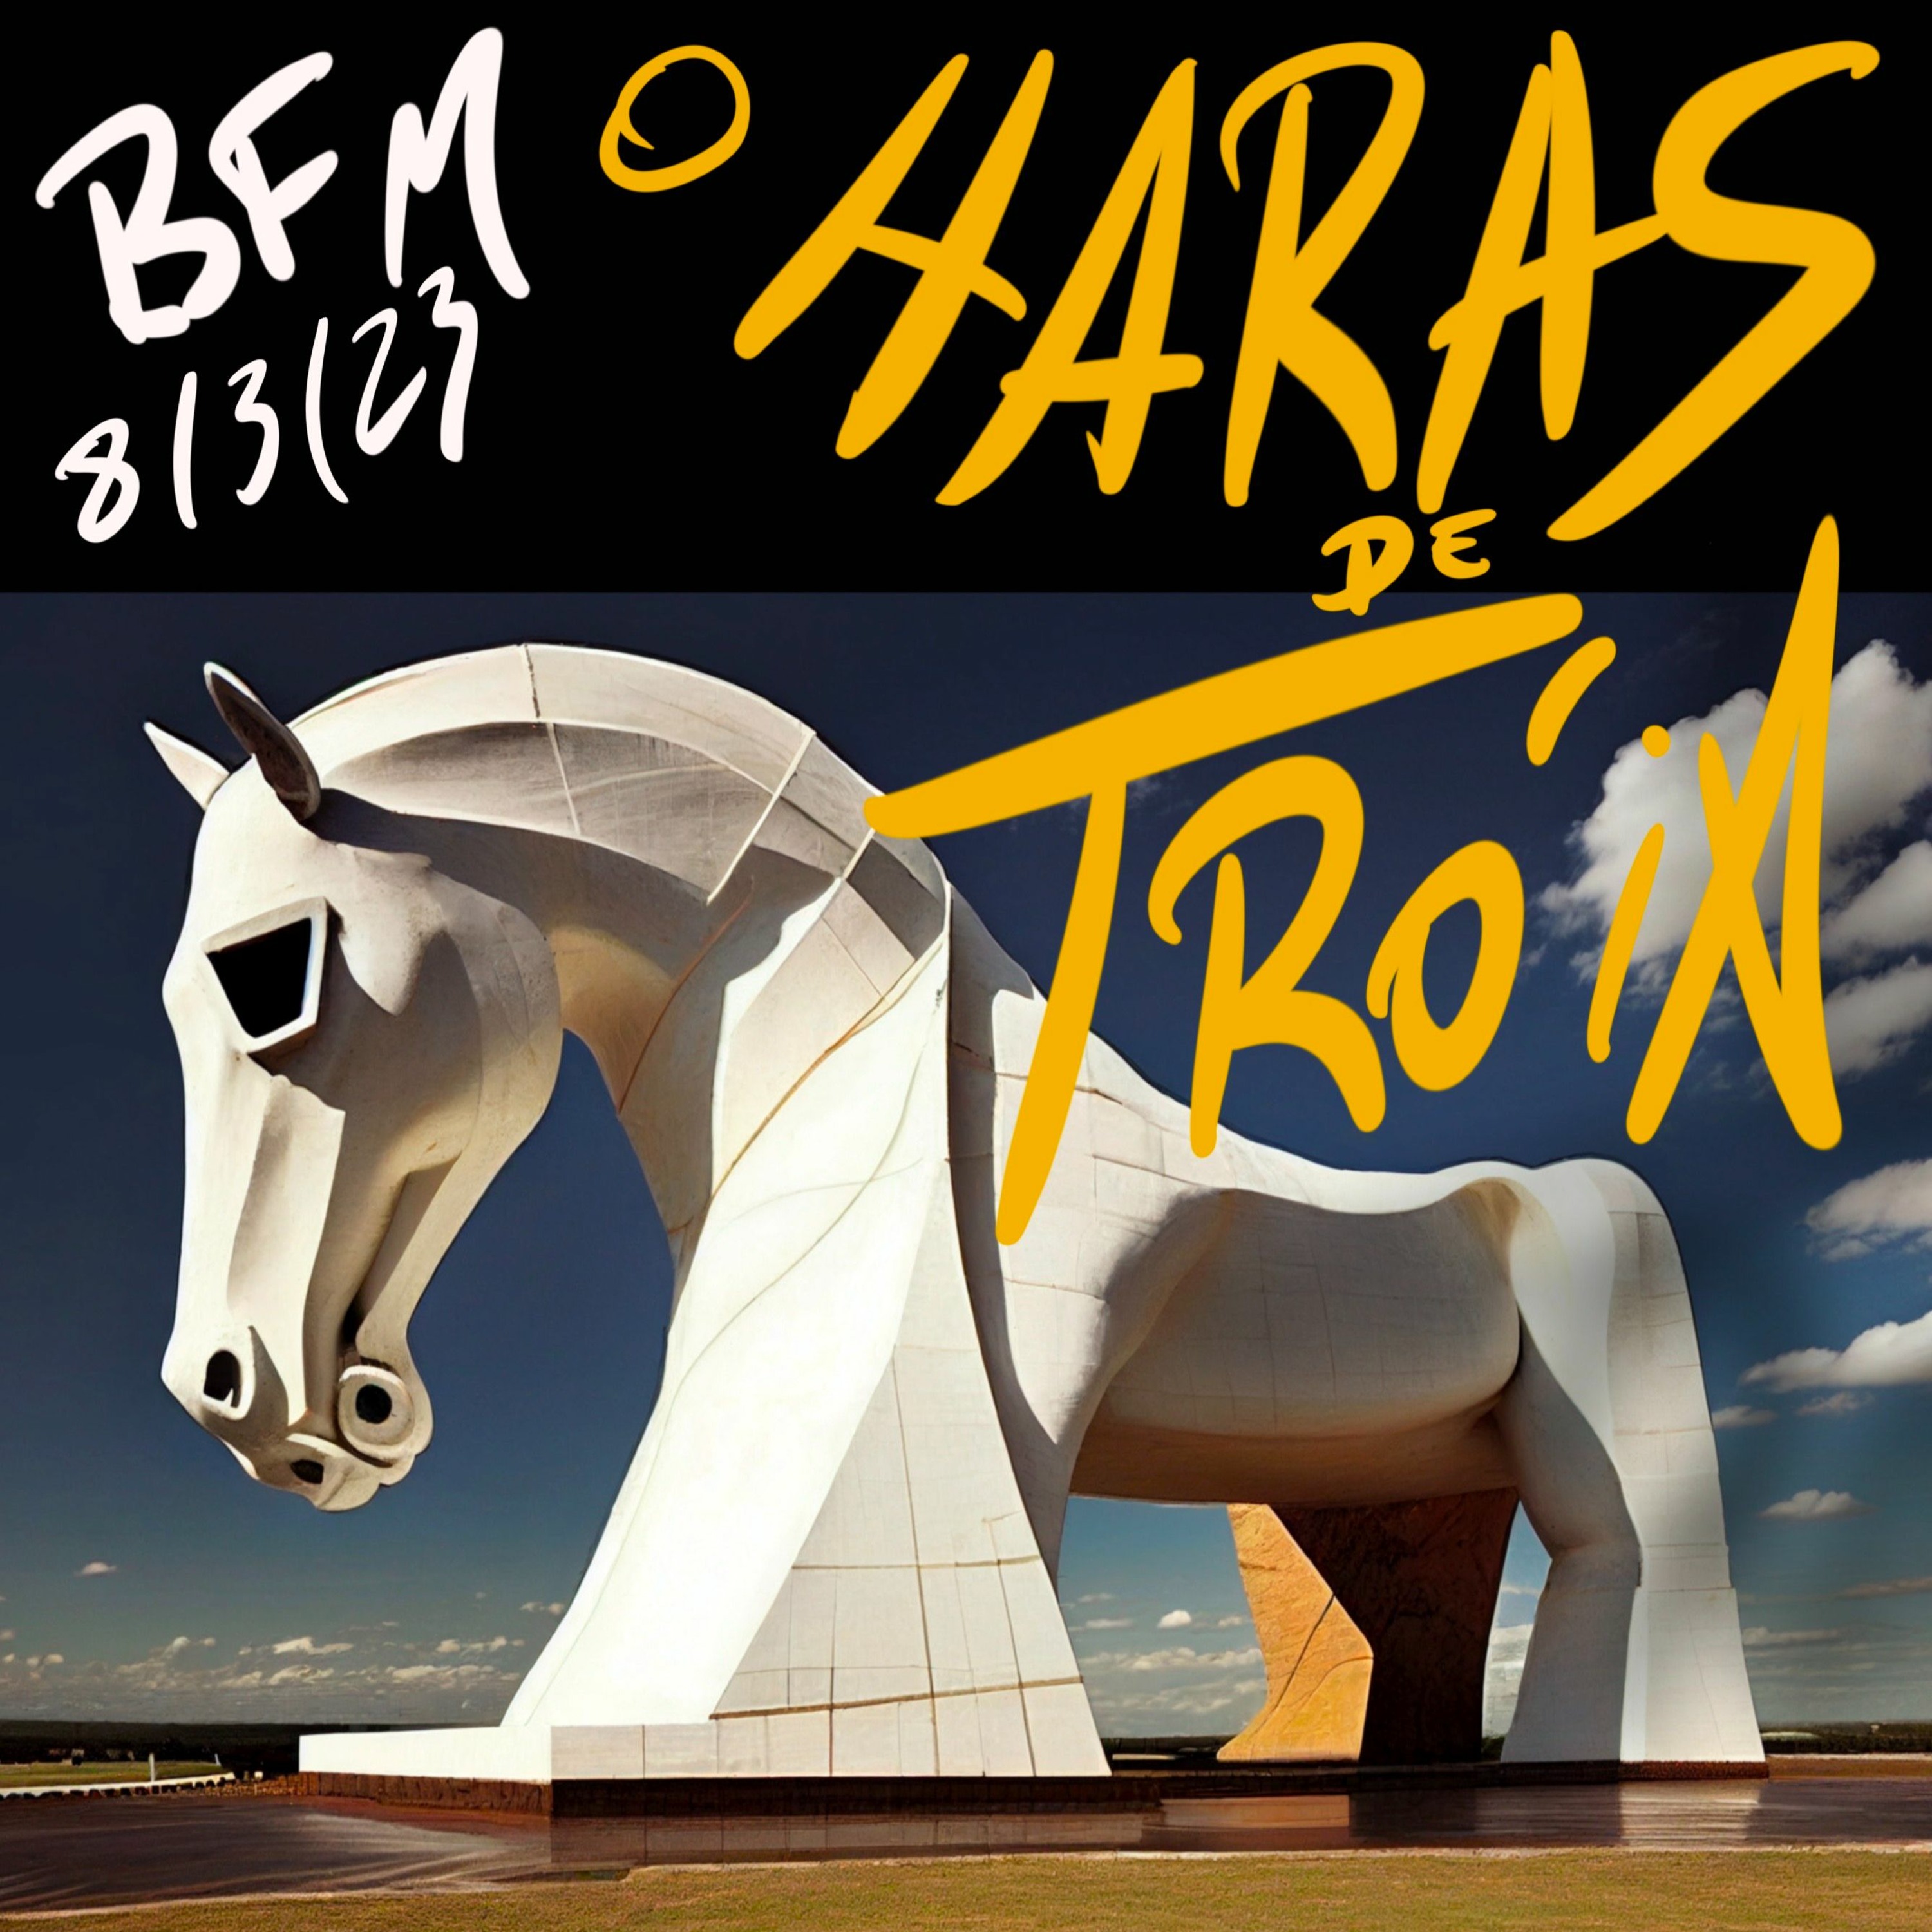 BFM - 8/3/23 - O Haras de Tróia